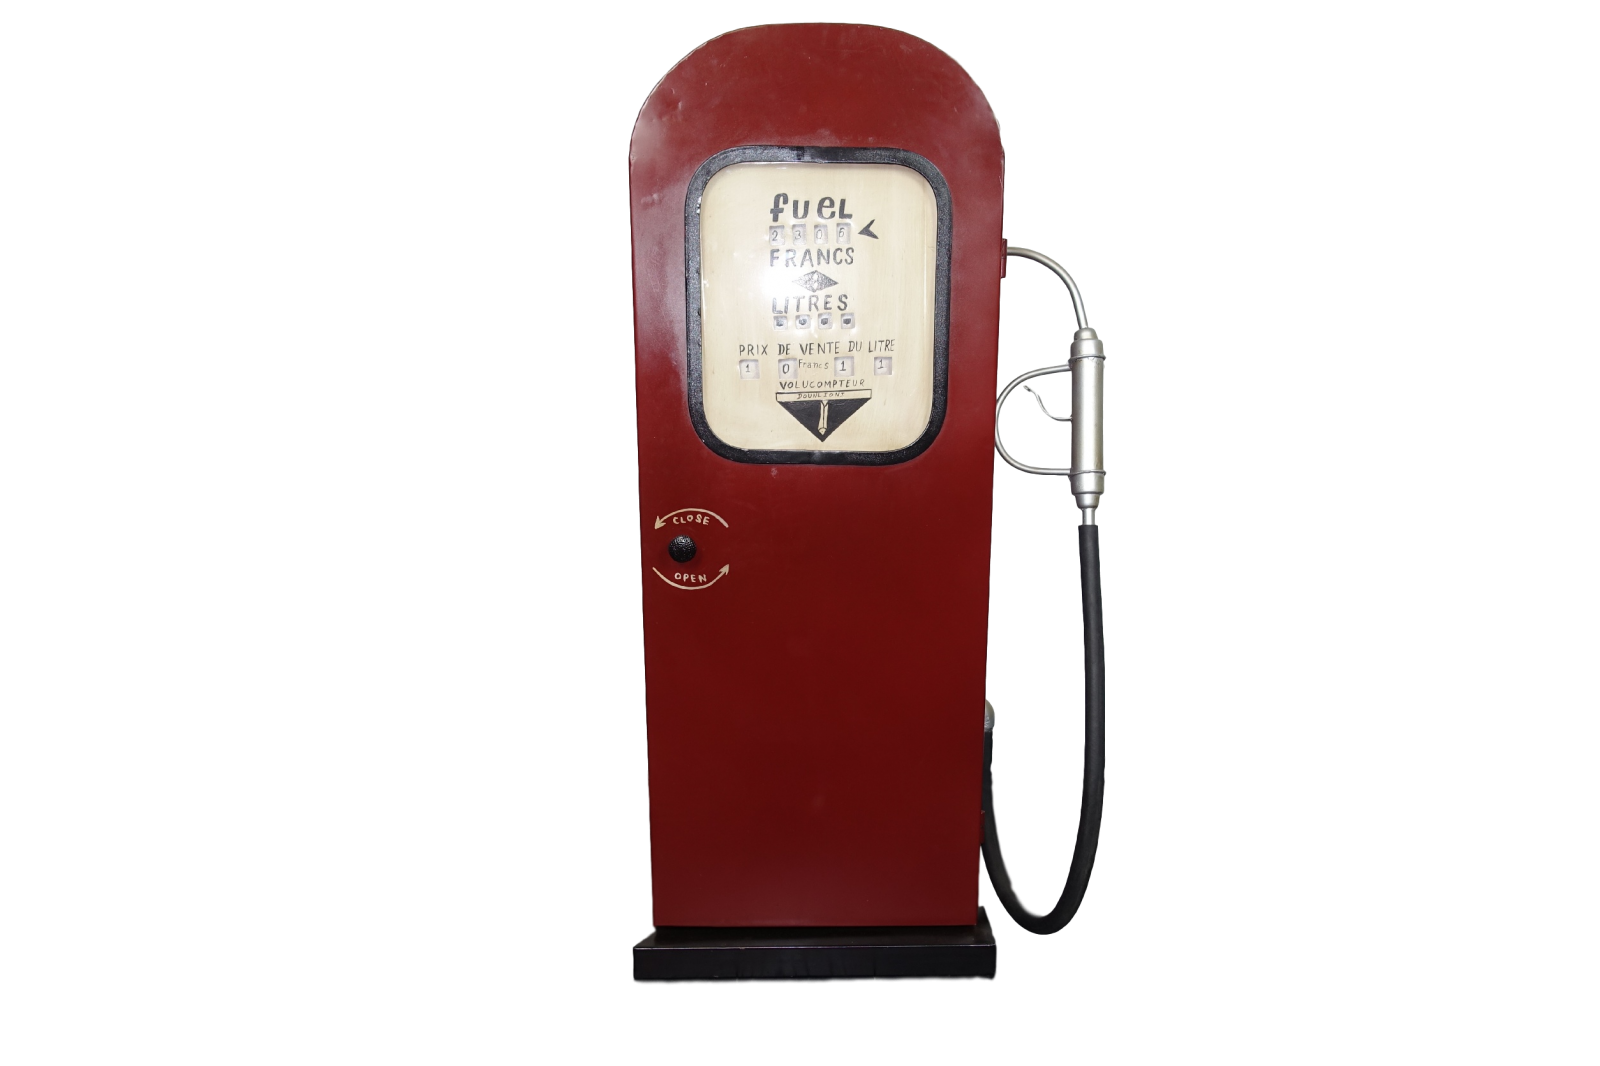 Vintage gas pump rental